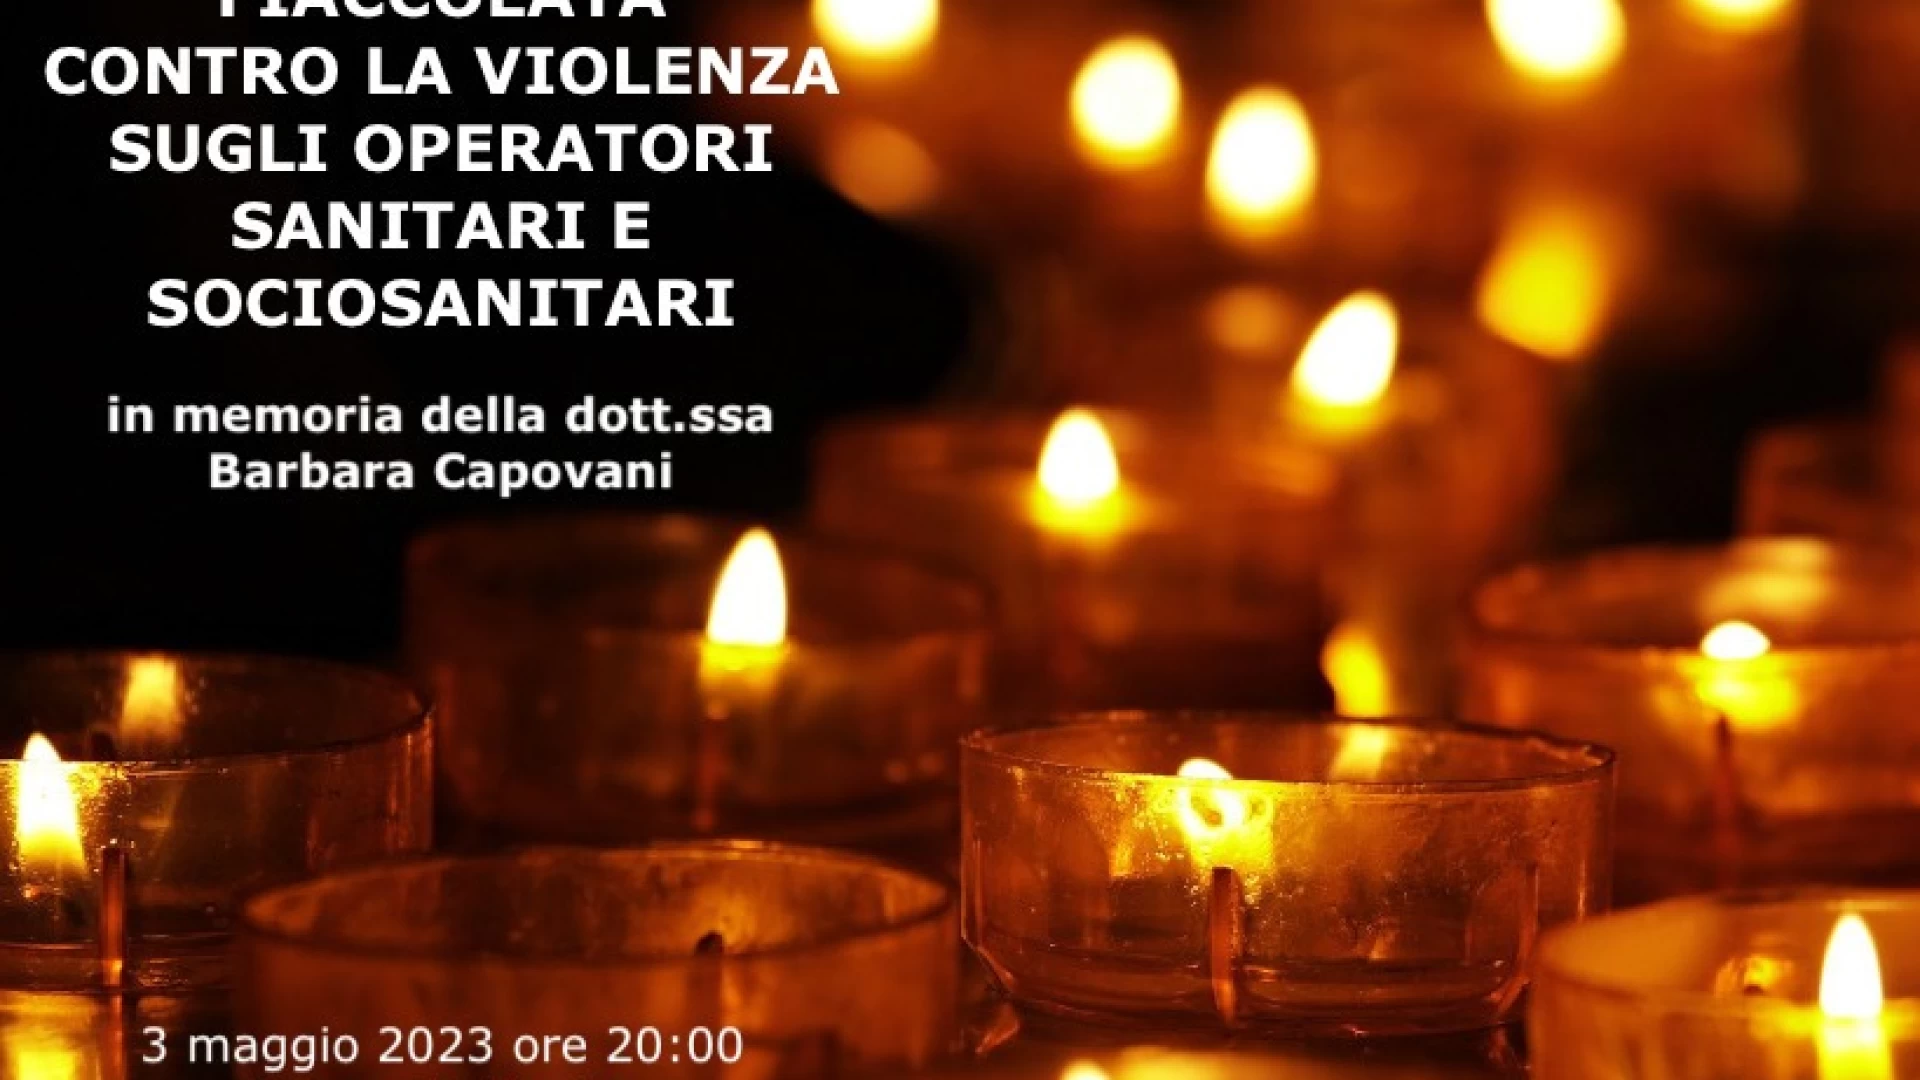 Castel Di Sangro: in serata la fiaccolata contro la violenza sugli operatori sanitari e sociosanitari in memoria della dottoressa Barbara Capovani.